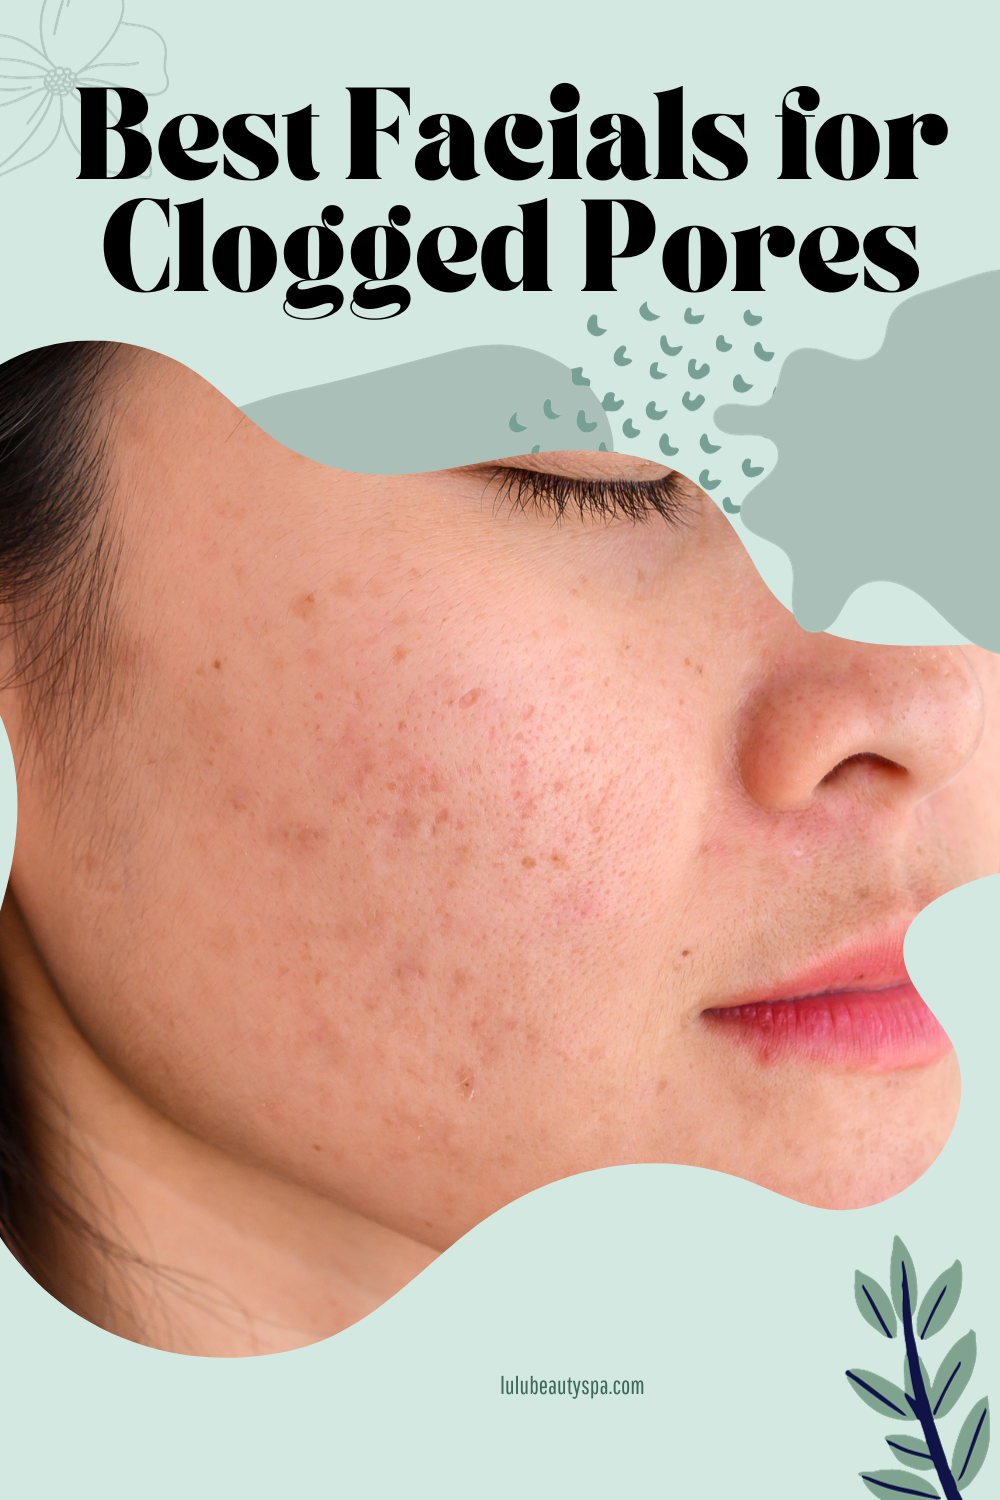 Best Facial for Clogged Pores